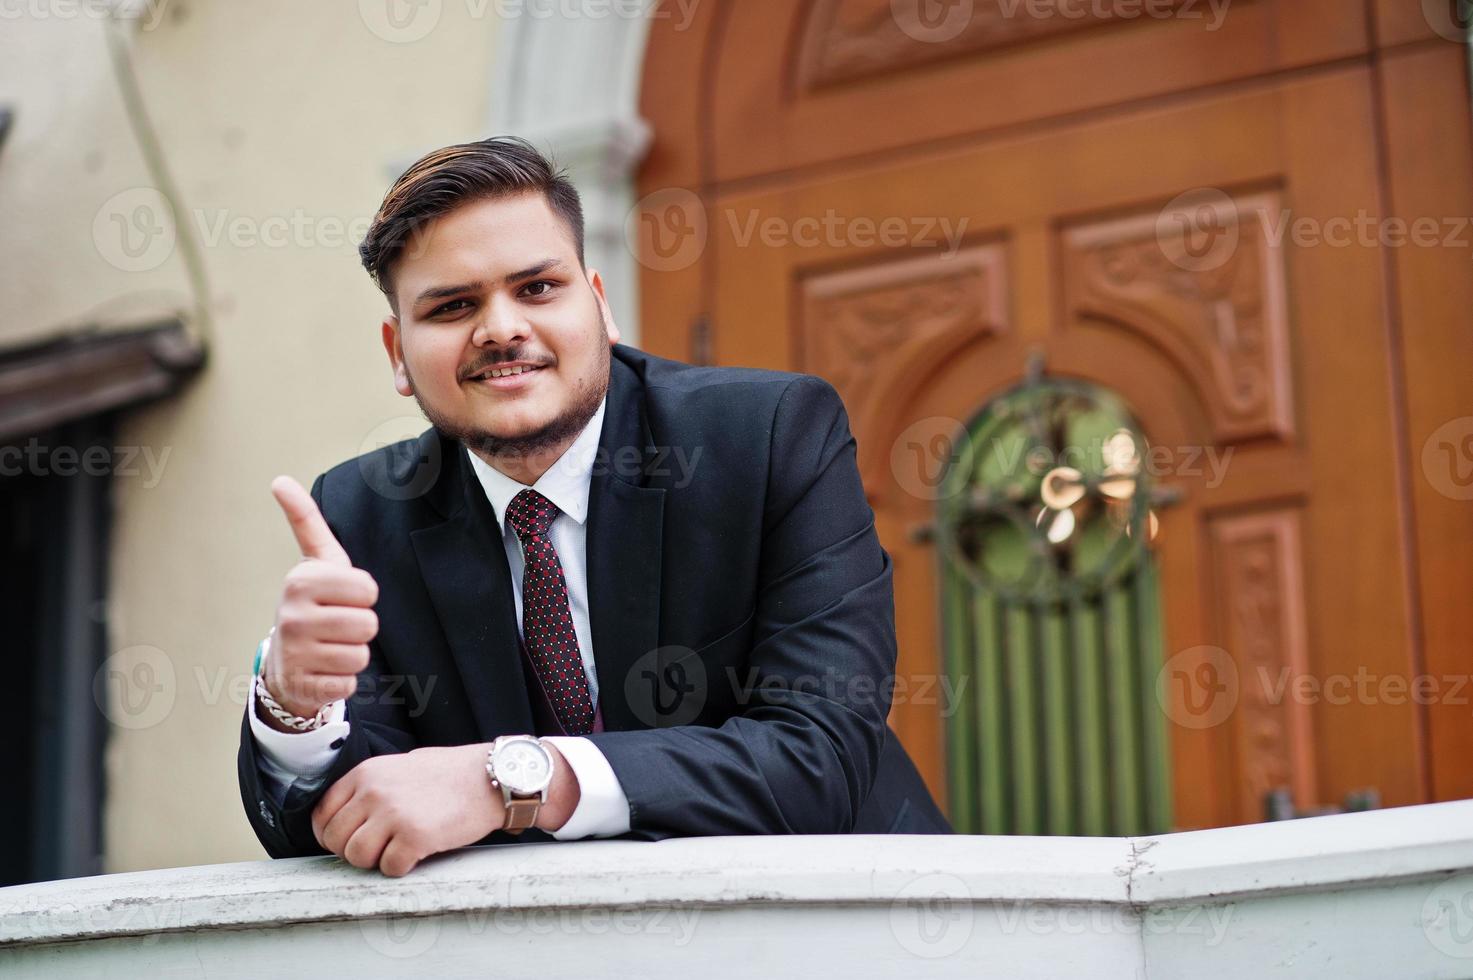 empresário indiano elegante com roupa formal, apoiando-se em uma grade contra a porta no centro de negócios. ele homem feliz e mostra o polegar para cima. foto